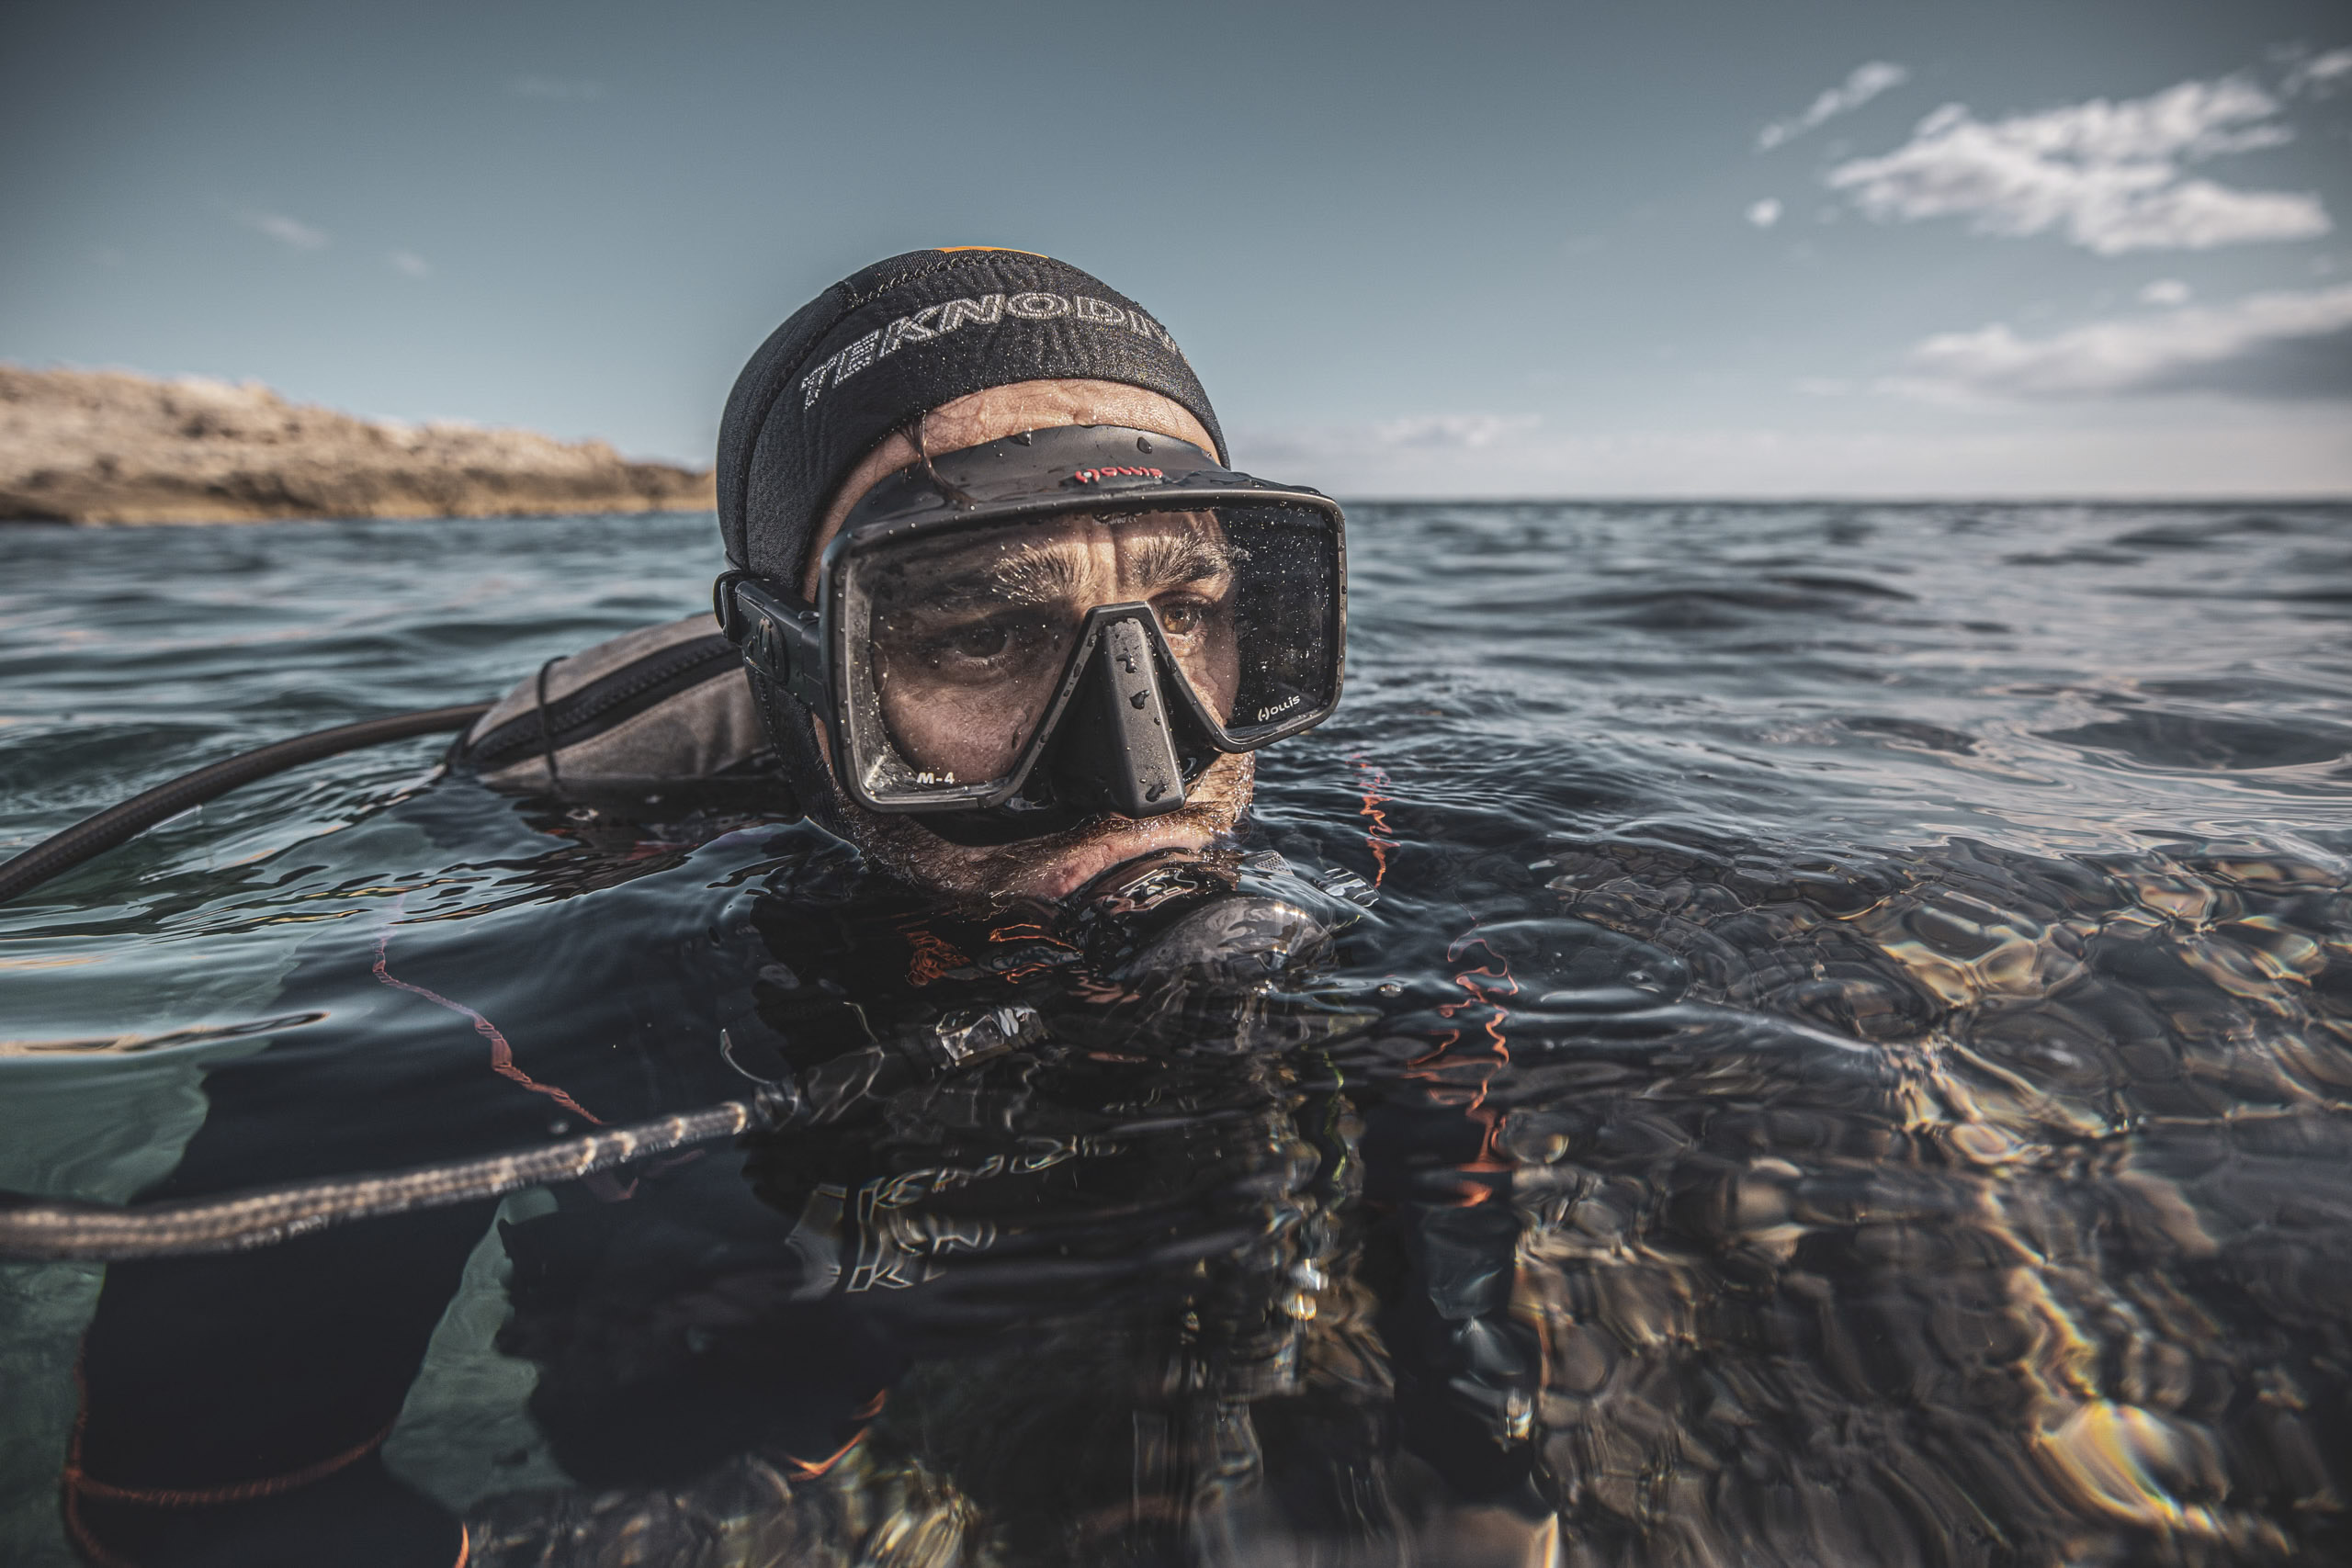 Ein teilweise im Meerwasser eingetauchter Taucher mit Maske und Schnorchel blickt mit ruhigem Gesichtsausdruck aufmerksam in die Kamera, im Hintergrund sind felsige Küsten zu sehen. © Fotografie Tomas Rodriguez